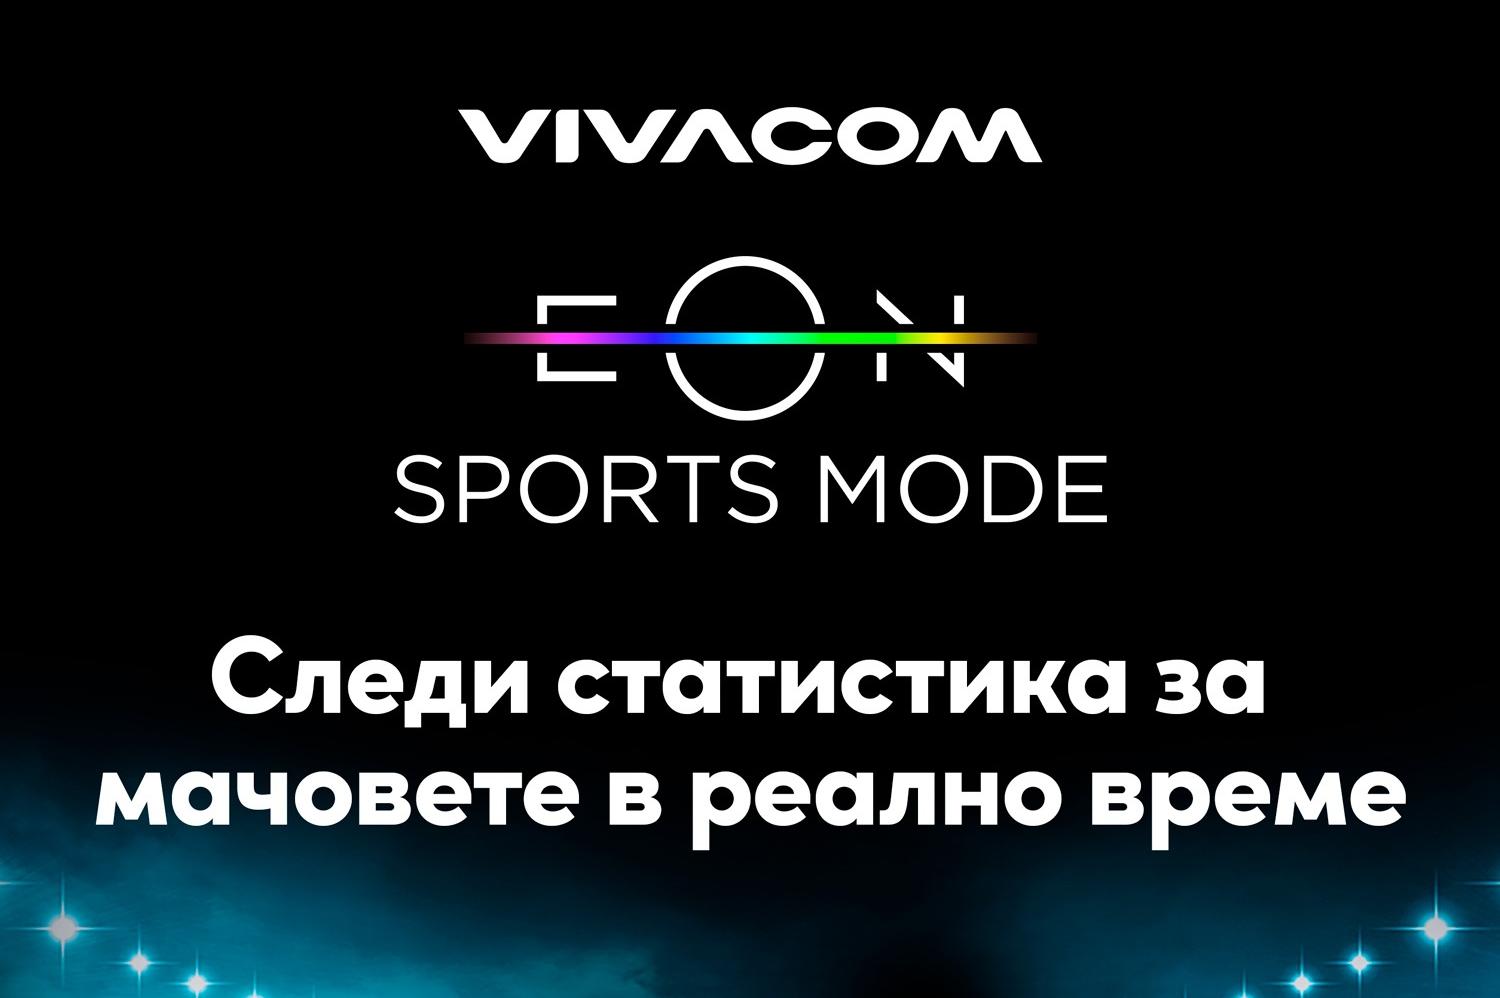 EON Sport mode